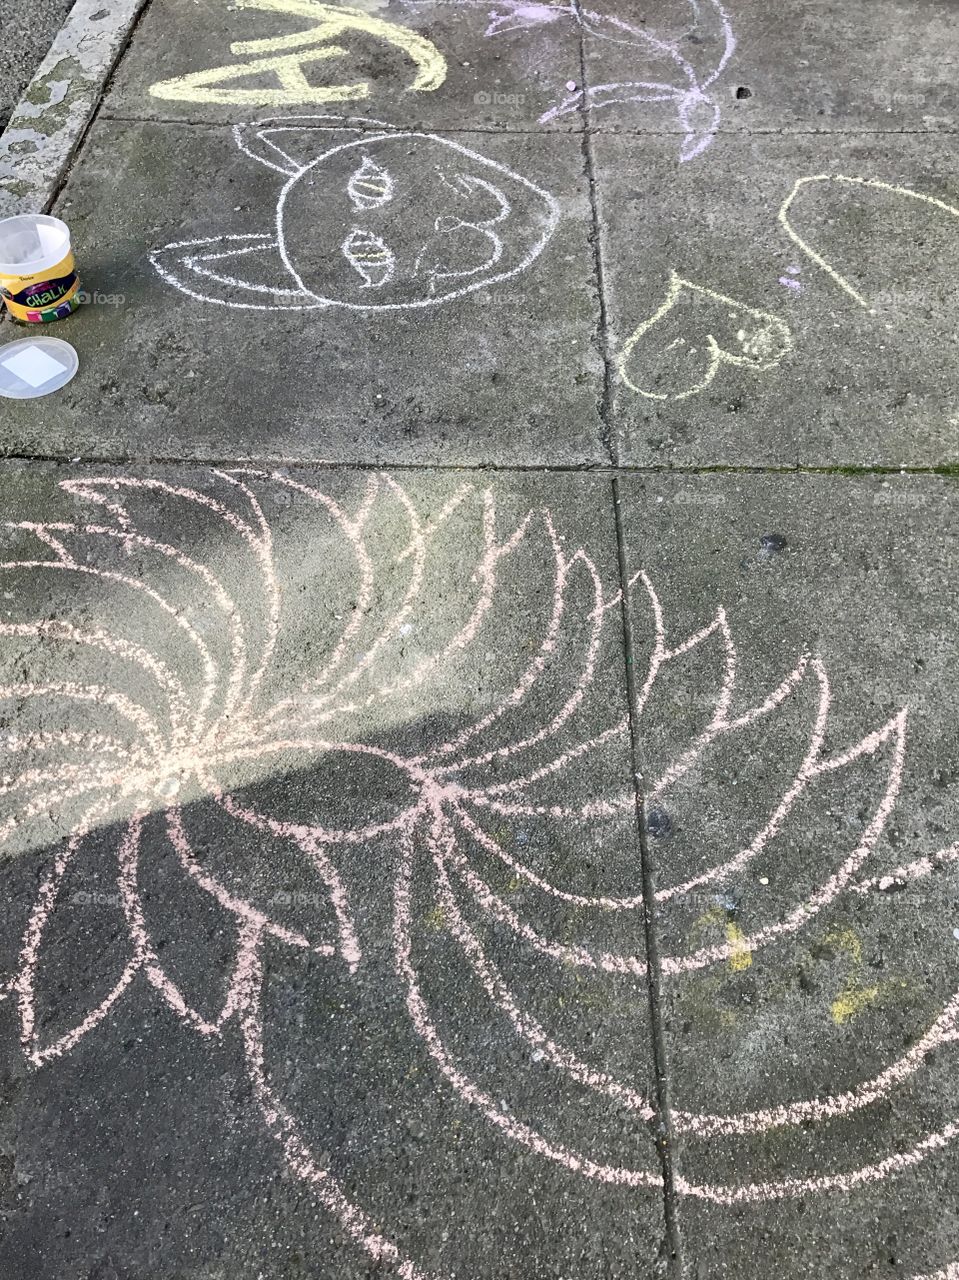 Sidewalk chalk fun